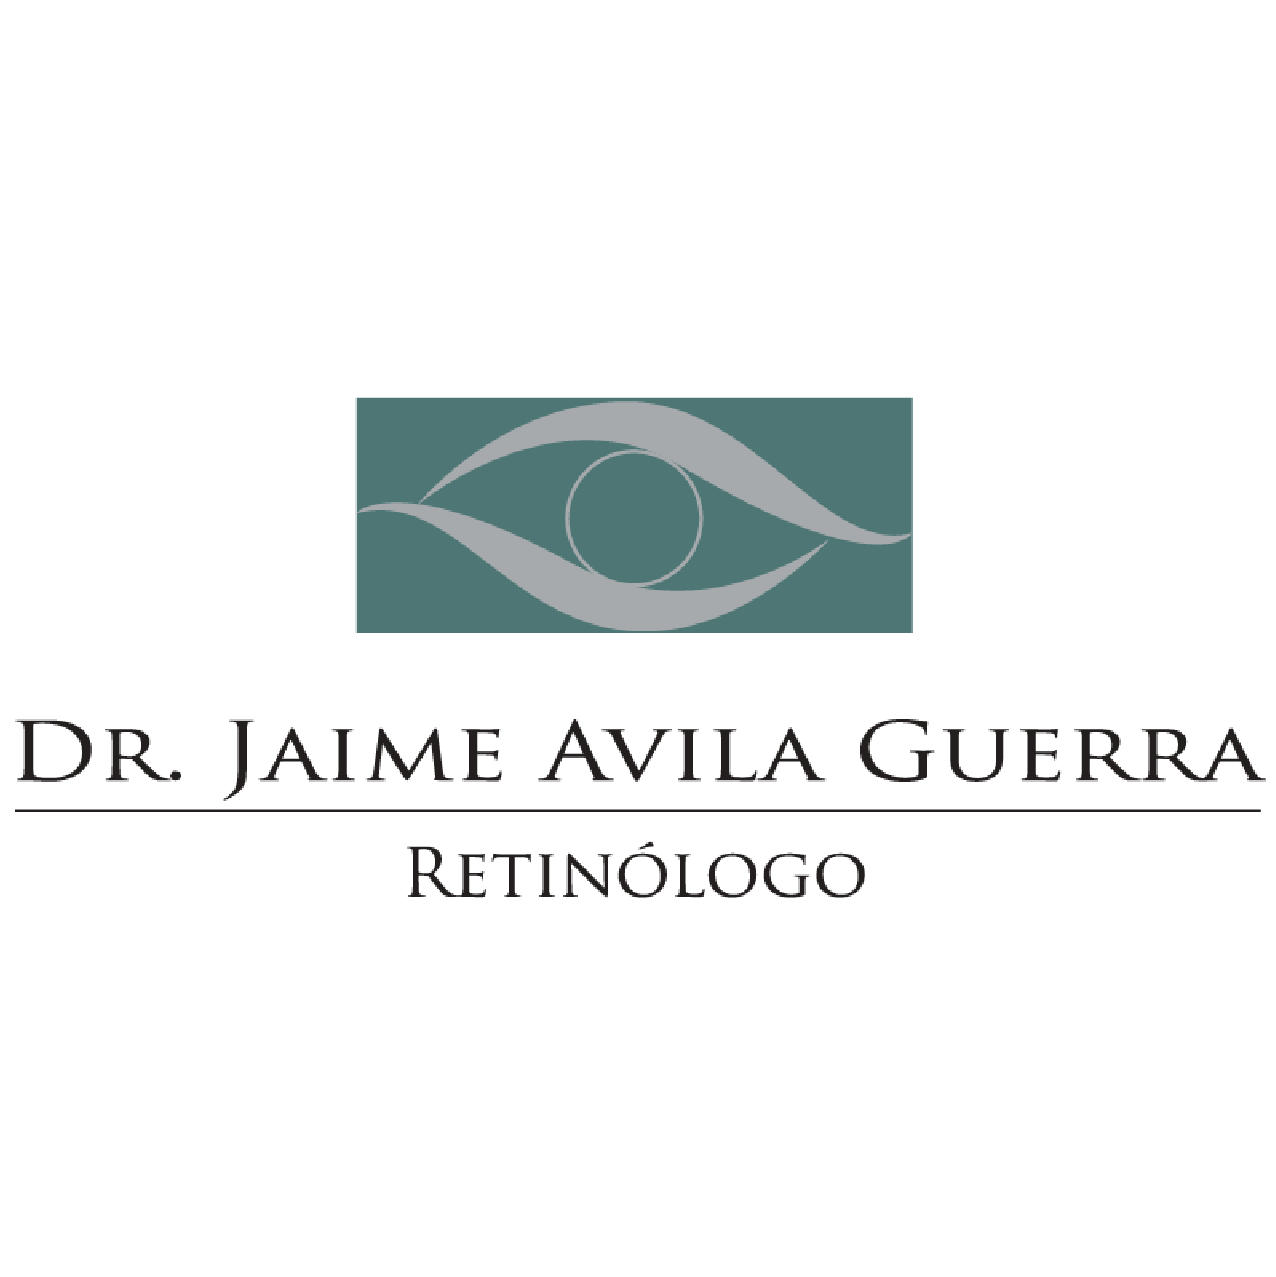 Dr. Jaime Avila Guerra Retinólogo